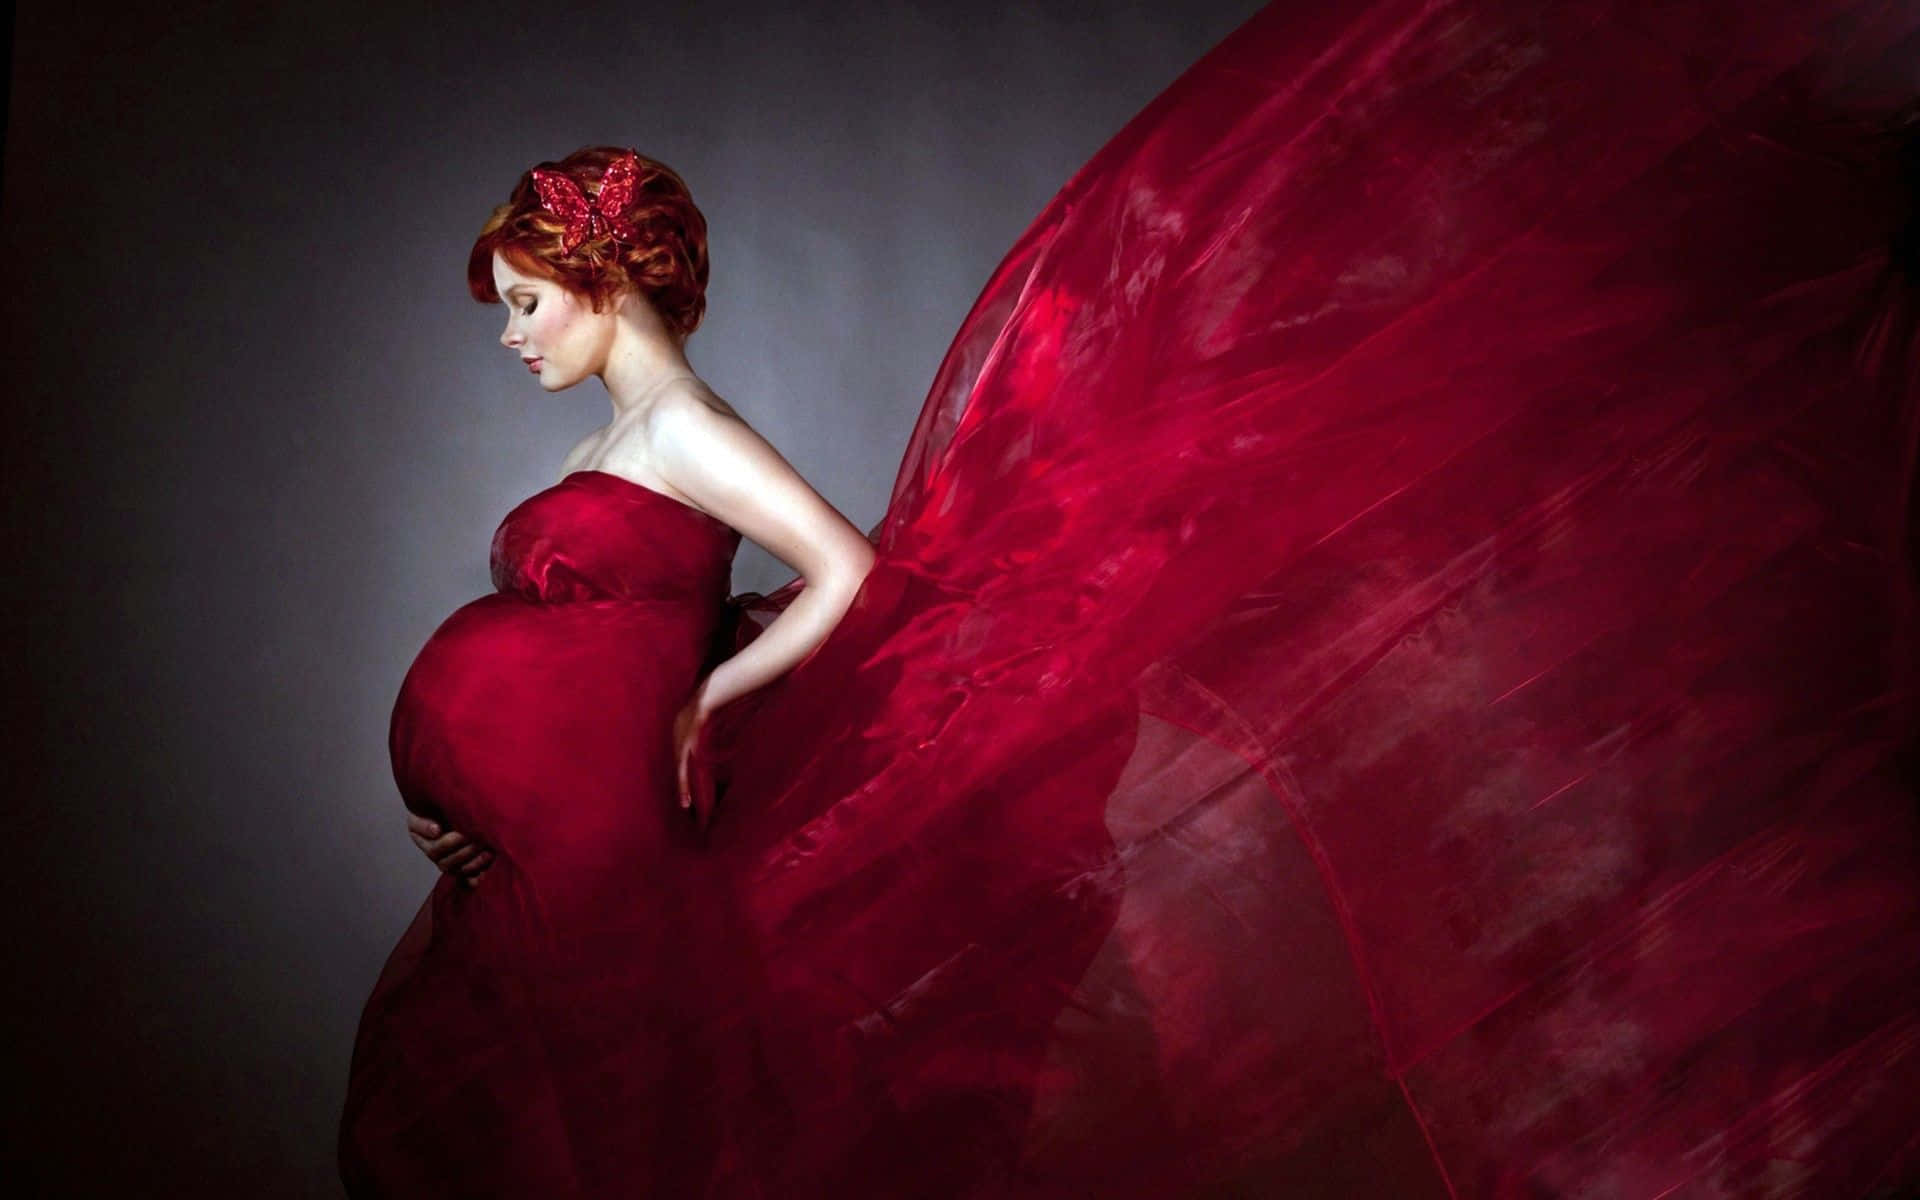 Pregnant Woman In Red Digital Art Wallpaper